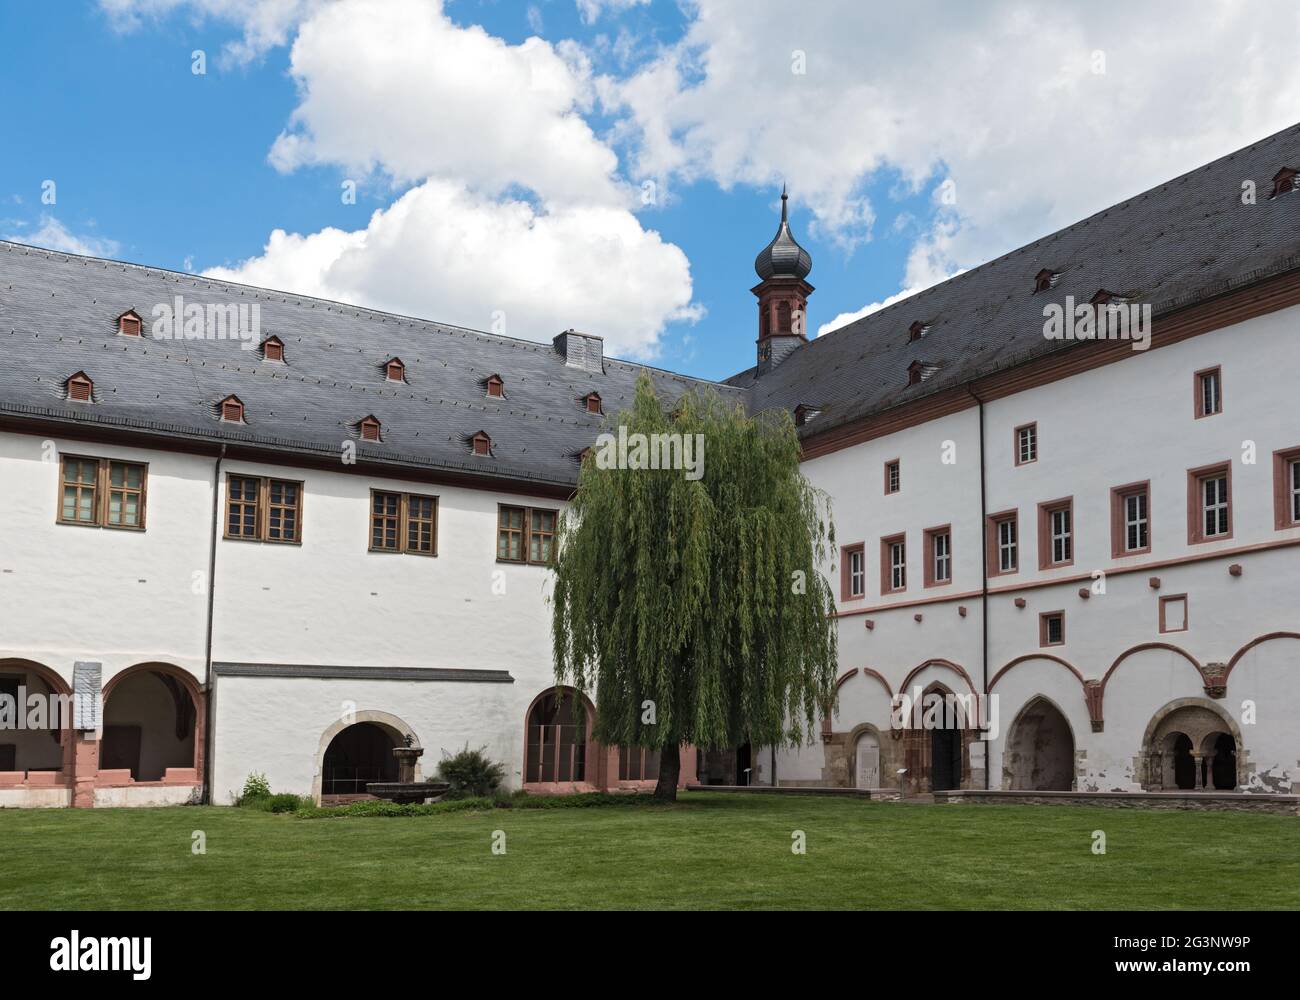 El famoso monasterio eberbach cerca de eltville hesse alemania Foto de stock